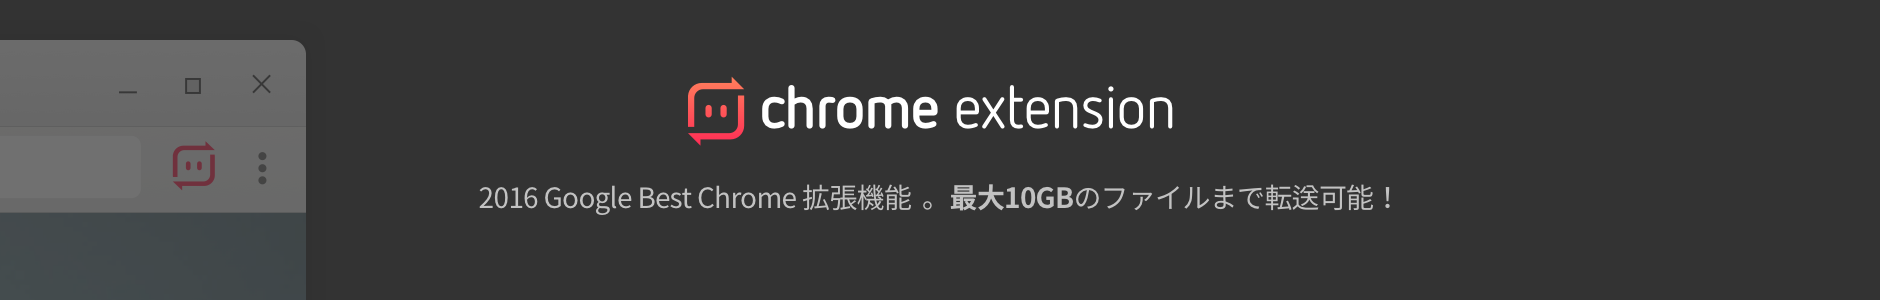 Chrome store banner